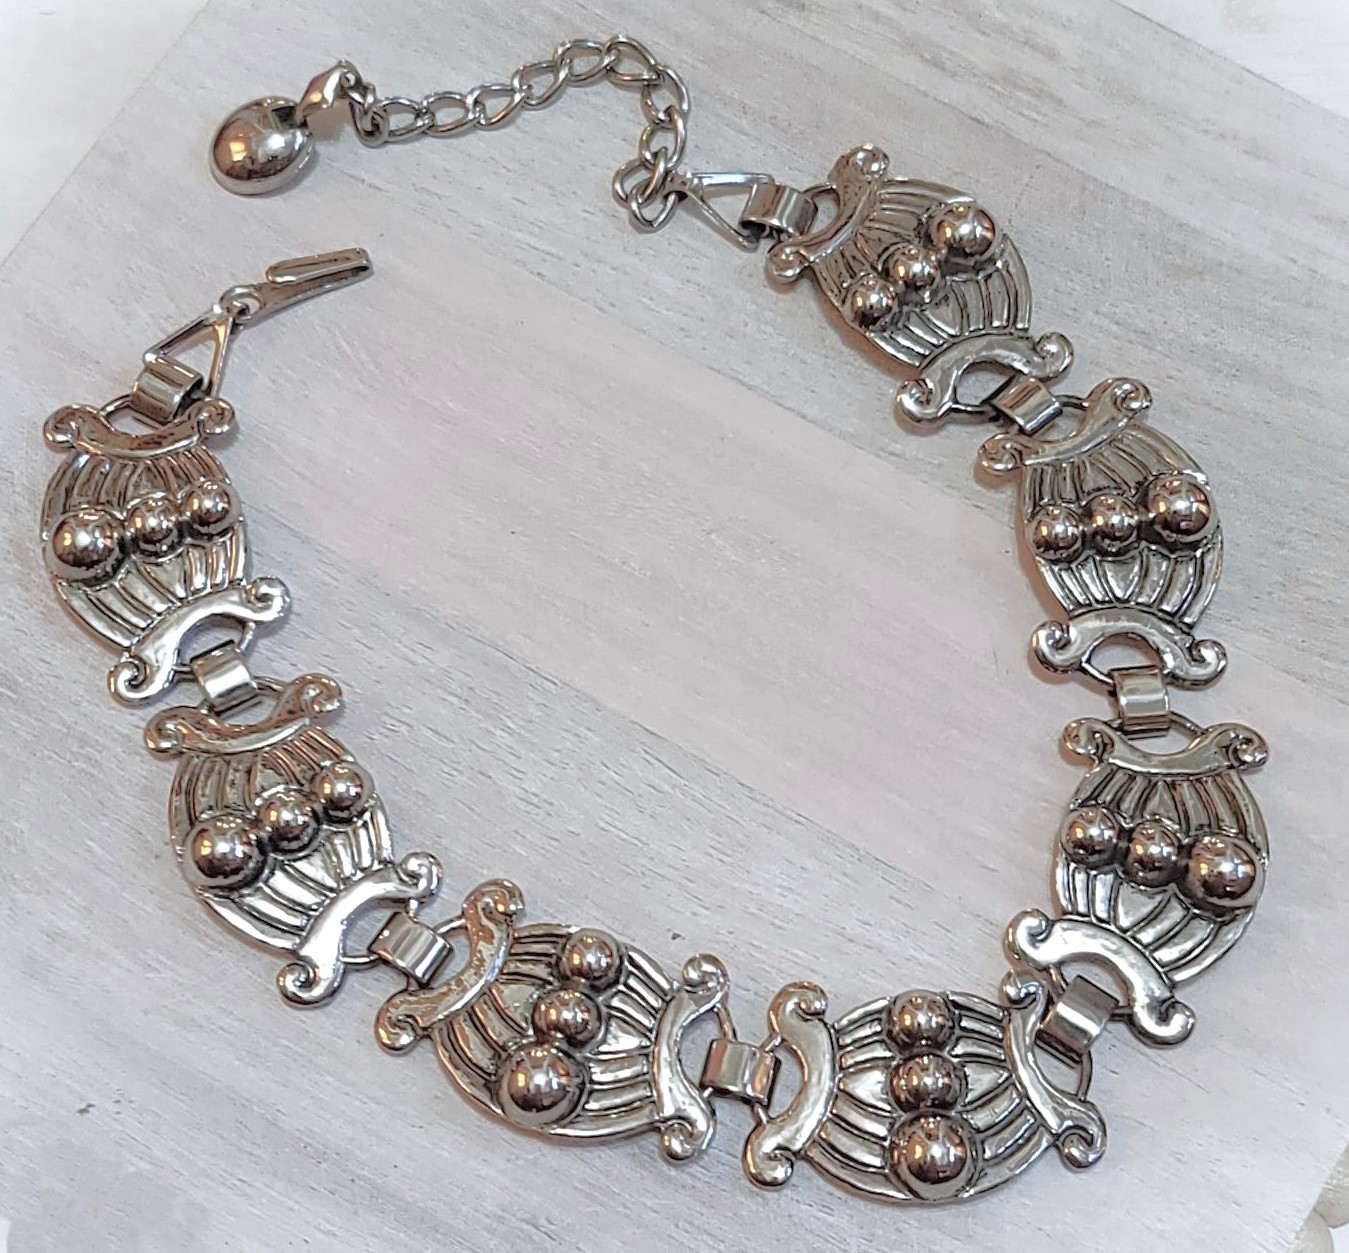 Shepherds hook silver alloy vintage choker necklace